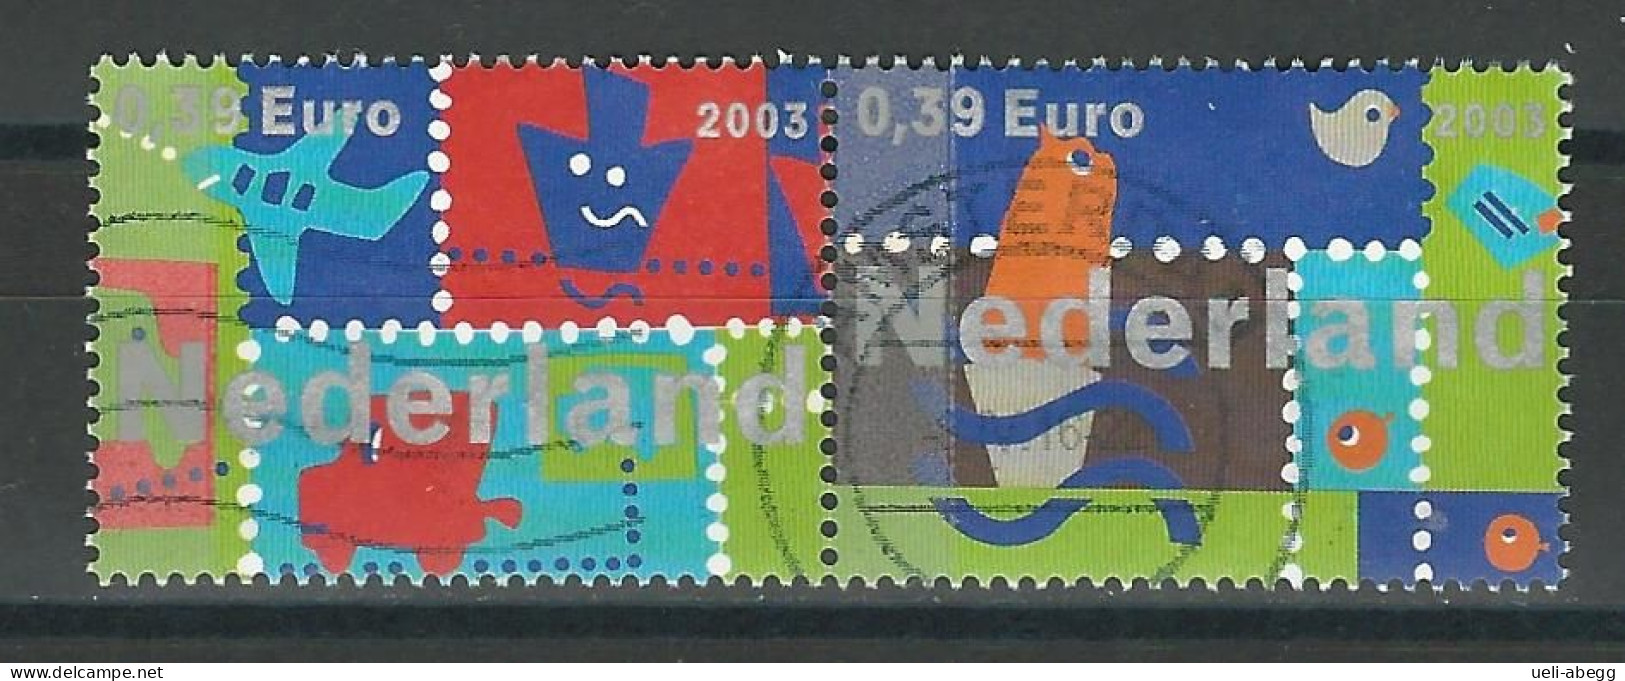 Niederlande NVPH 2194-95, Mi 2134-35 O - Used Stamps